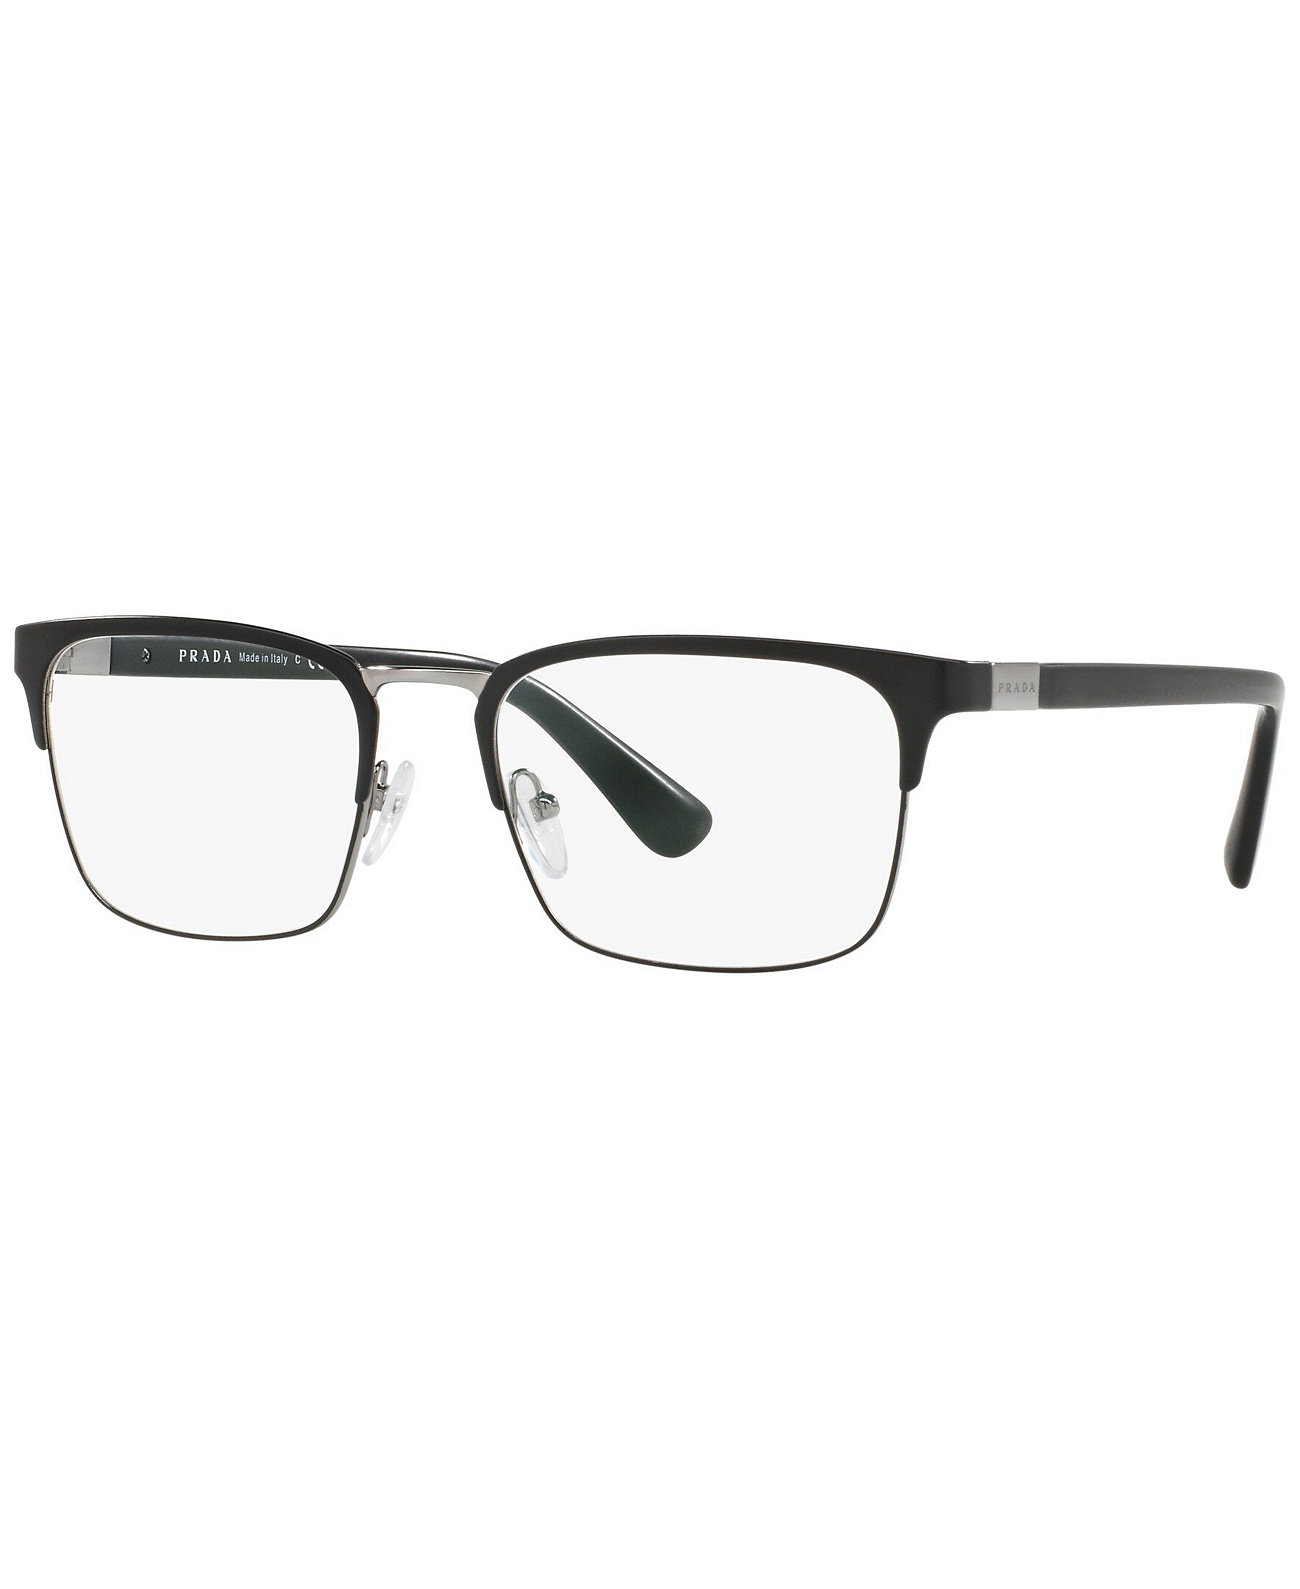 Мужские прямоугольные очки PR 54TV Prada